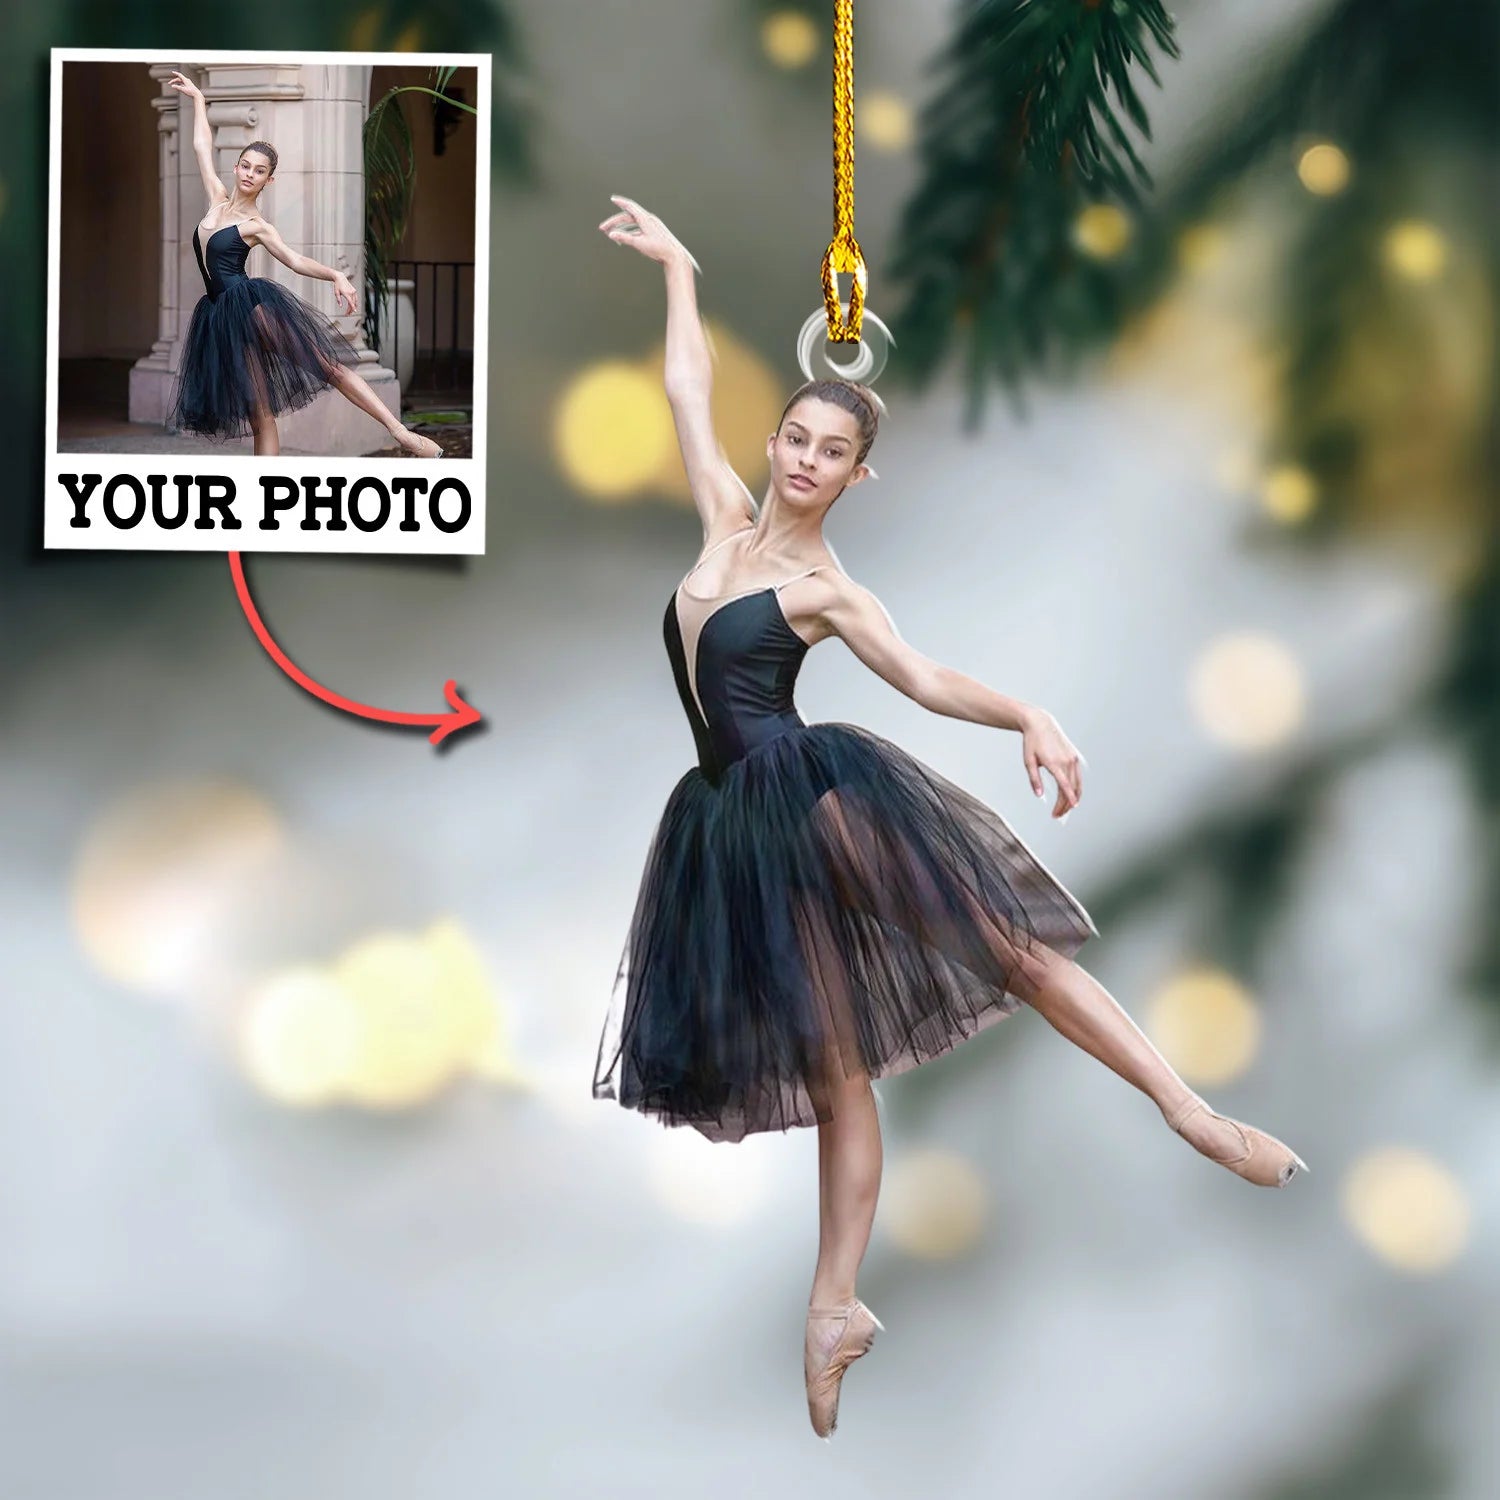 Custom Photo Ornament Gift For Ballet Dancer - Personalized Photo Ornament Gift For Ballet Lovers - Ballet Dancer Team Ornament